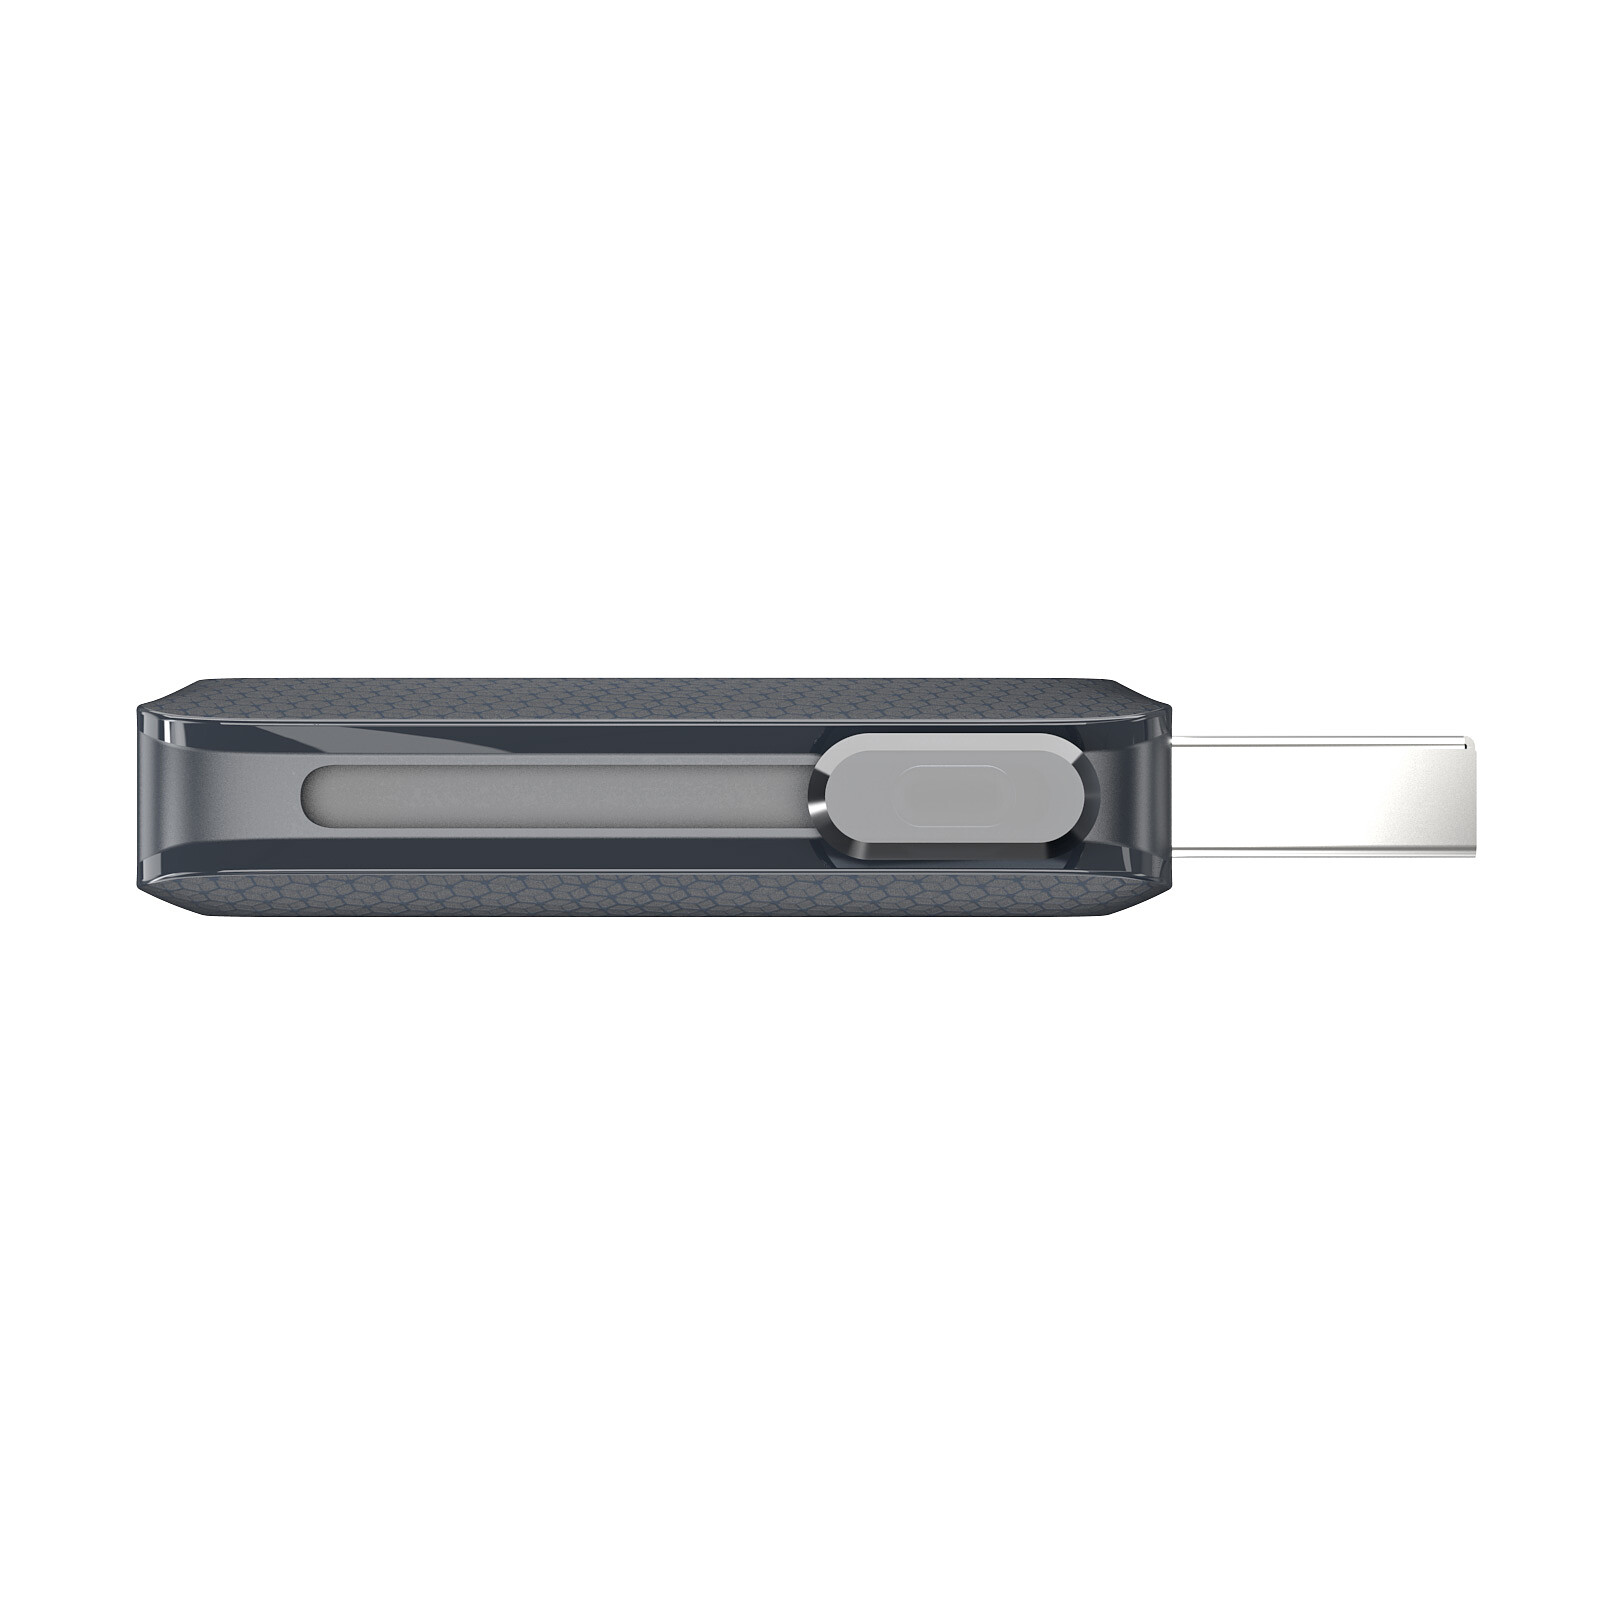 SanDisk Ultra Dual Drive Go - USB flash drive - 128 GB - USB 3.1